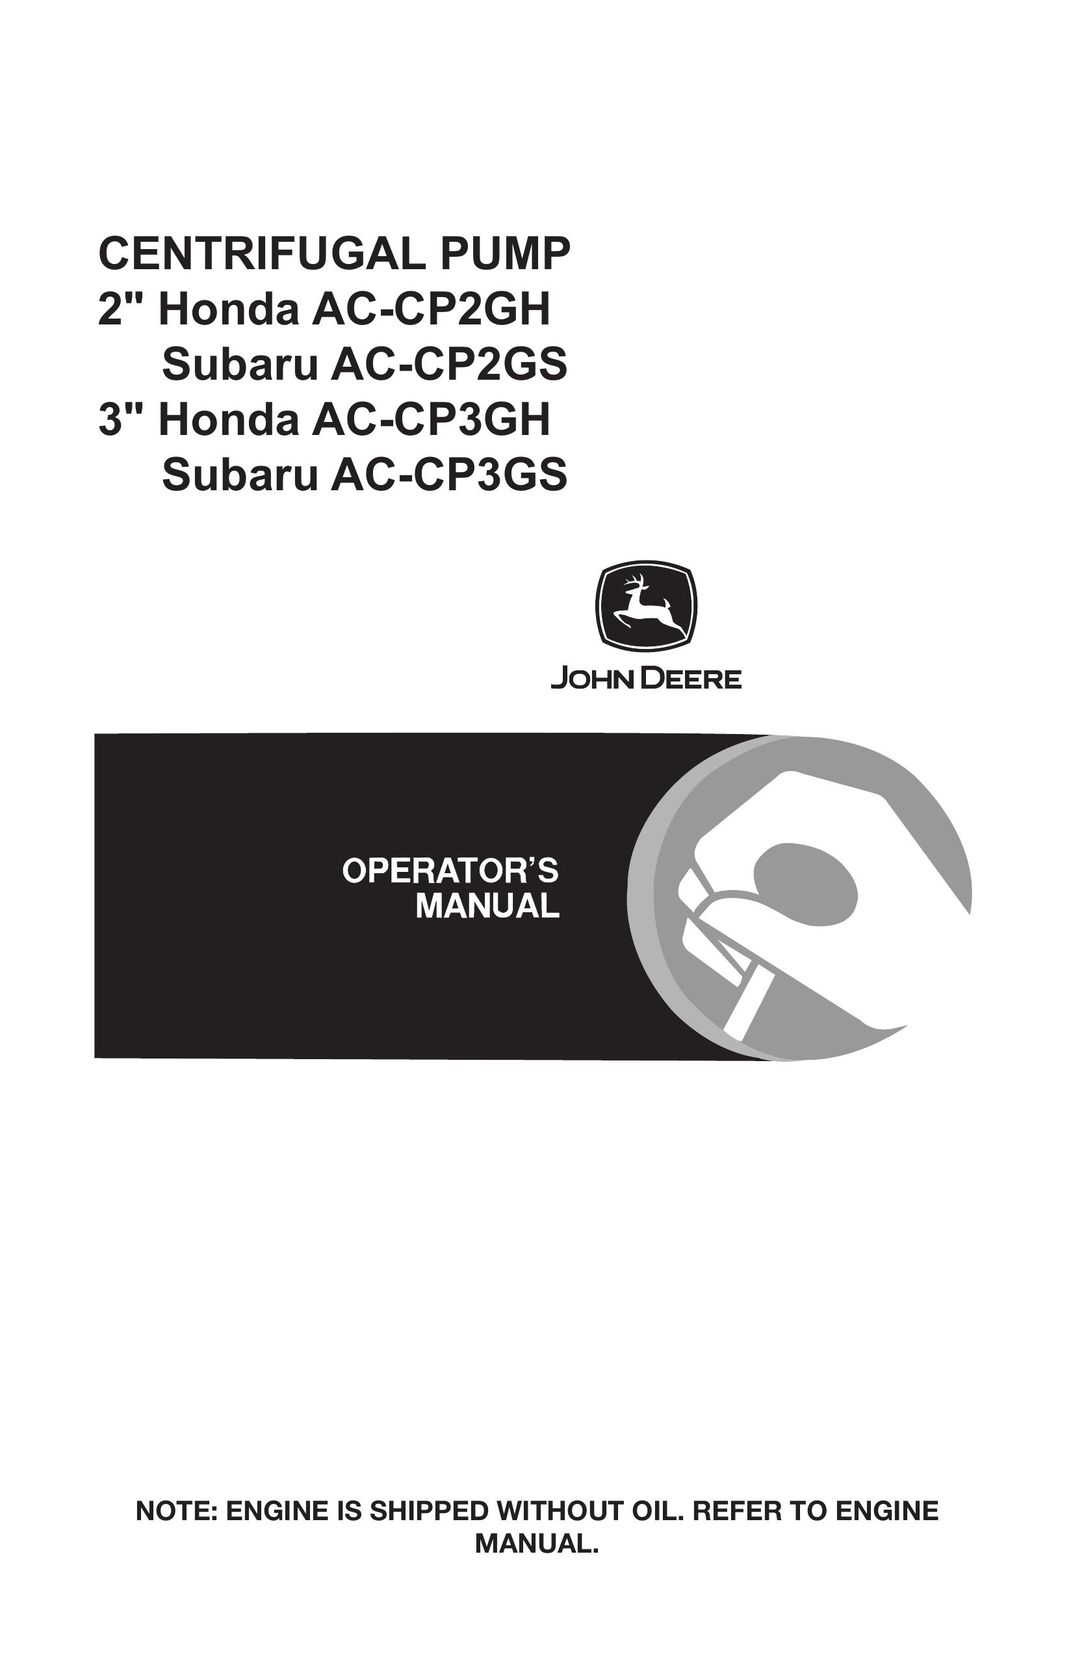 John Deere AC-CP3GH Water Pump User Manual